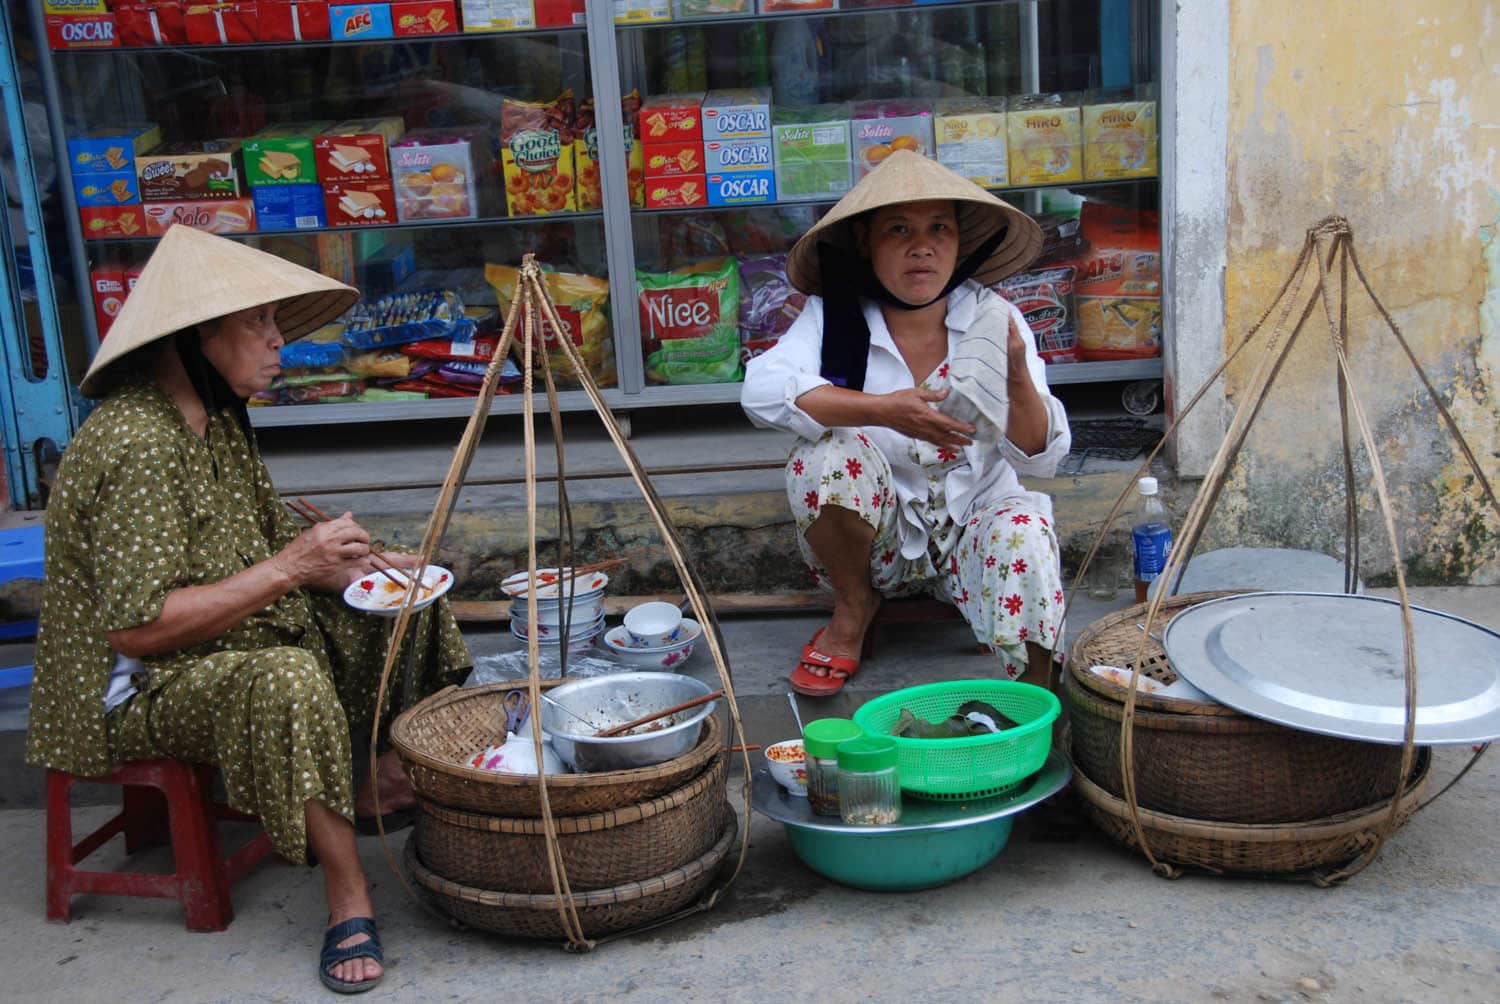 Les chapeaux coniques sont énormément portés au Vietnam !